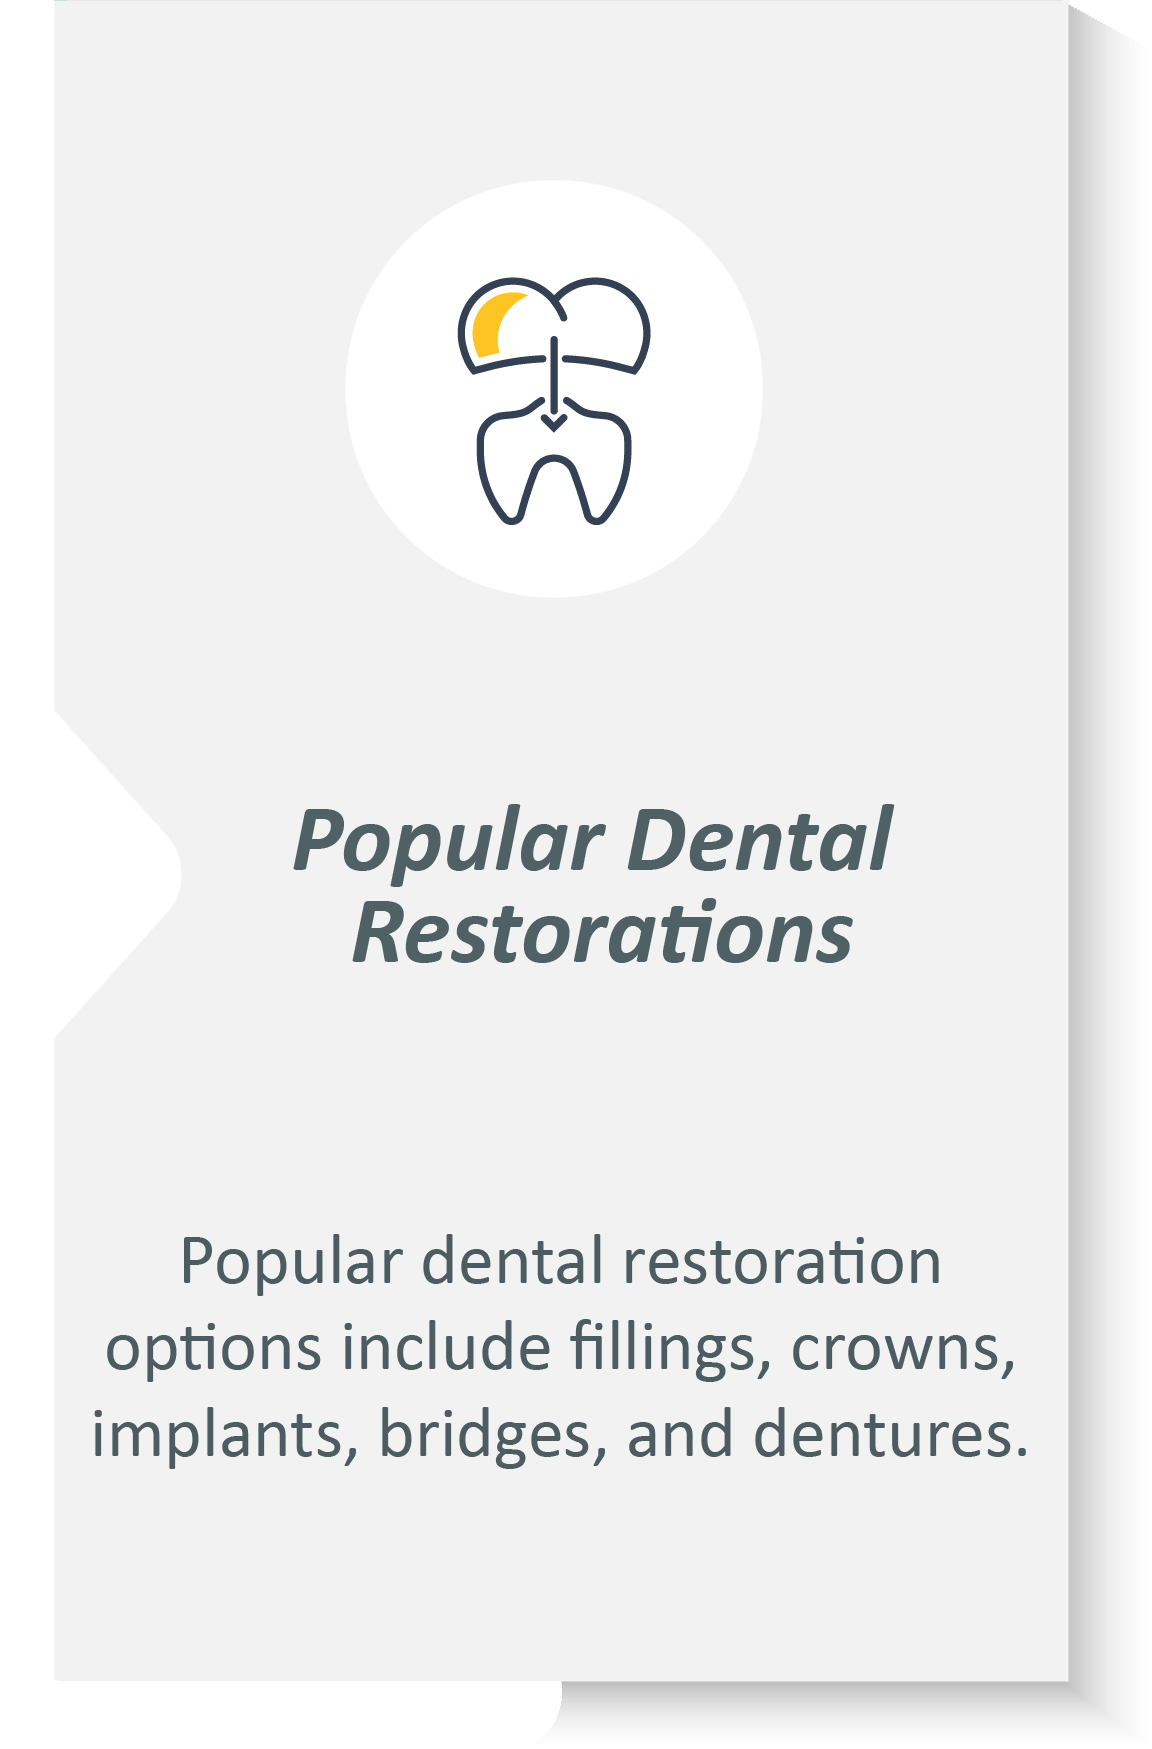 Dental restorations infographic: Popular dental restoration options include fillings, crowns, implants, bridges, and dentures.